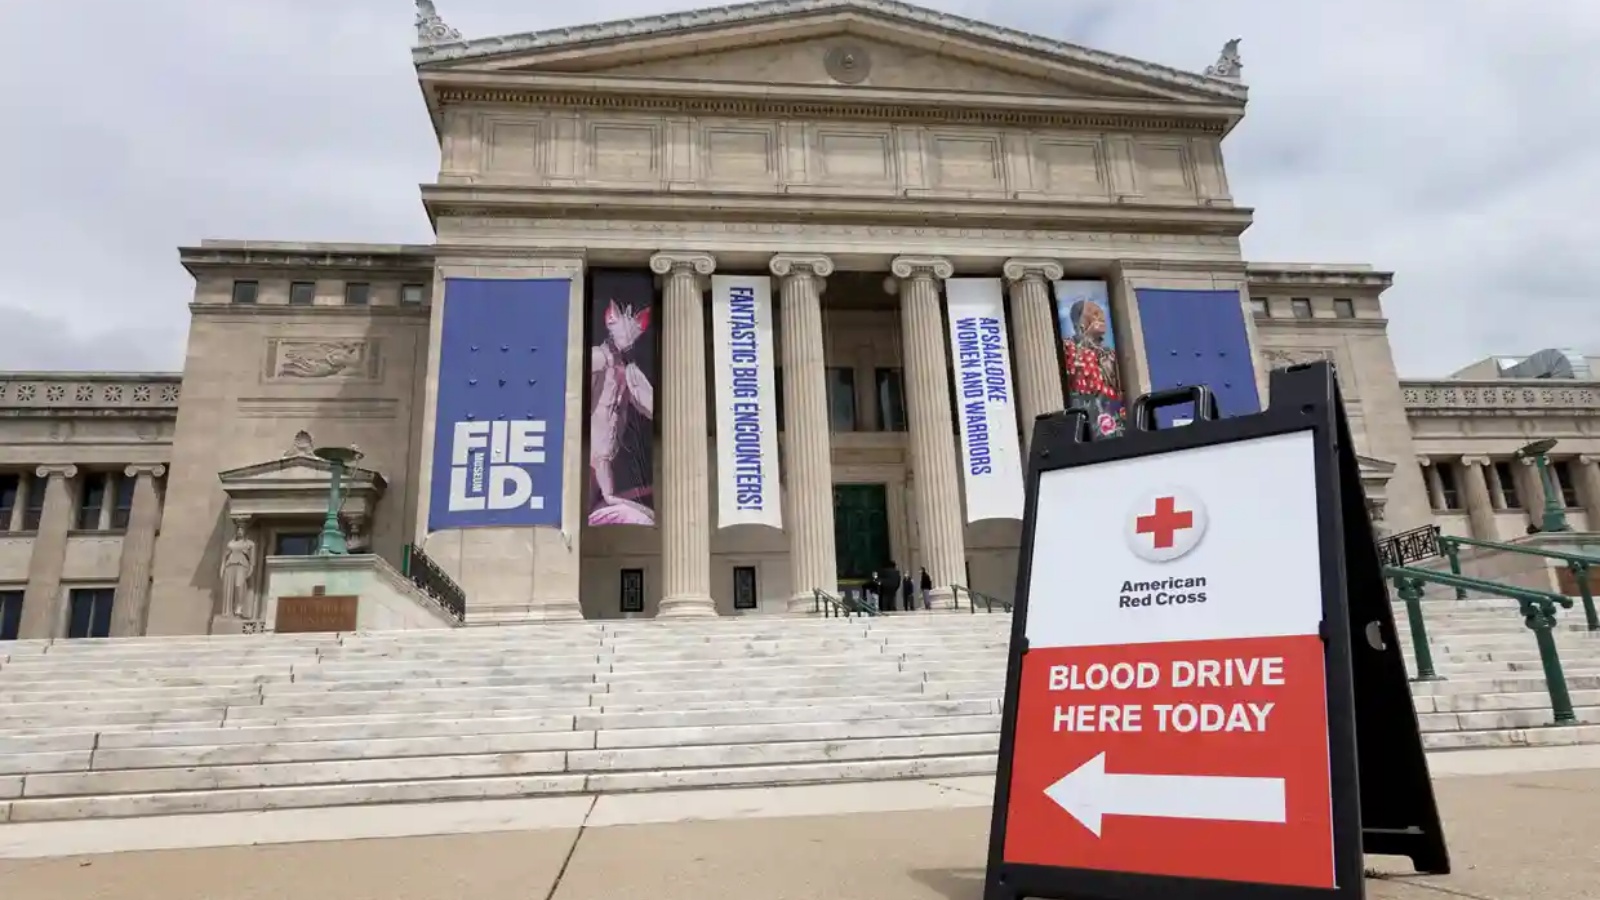 متحف فيلد للتاريخ الطبيعي، شيكاغو، يستضيف حملة التبرع بالدم للصليب الأحمر الأميركي